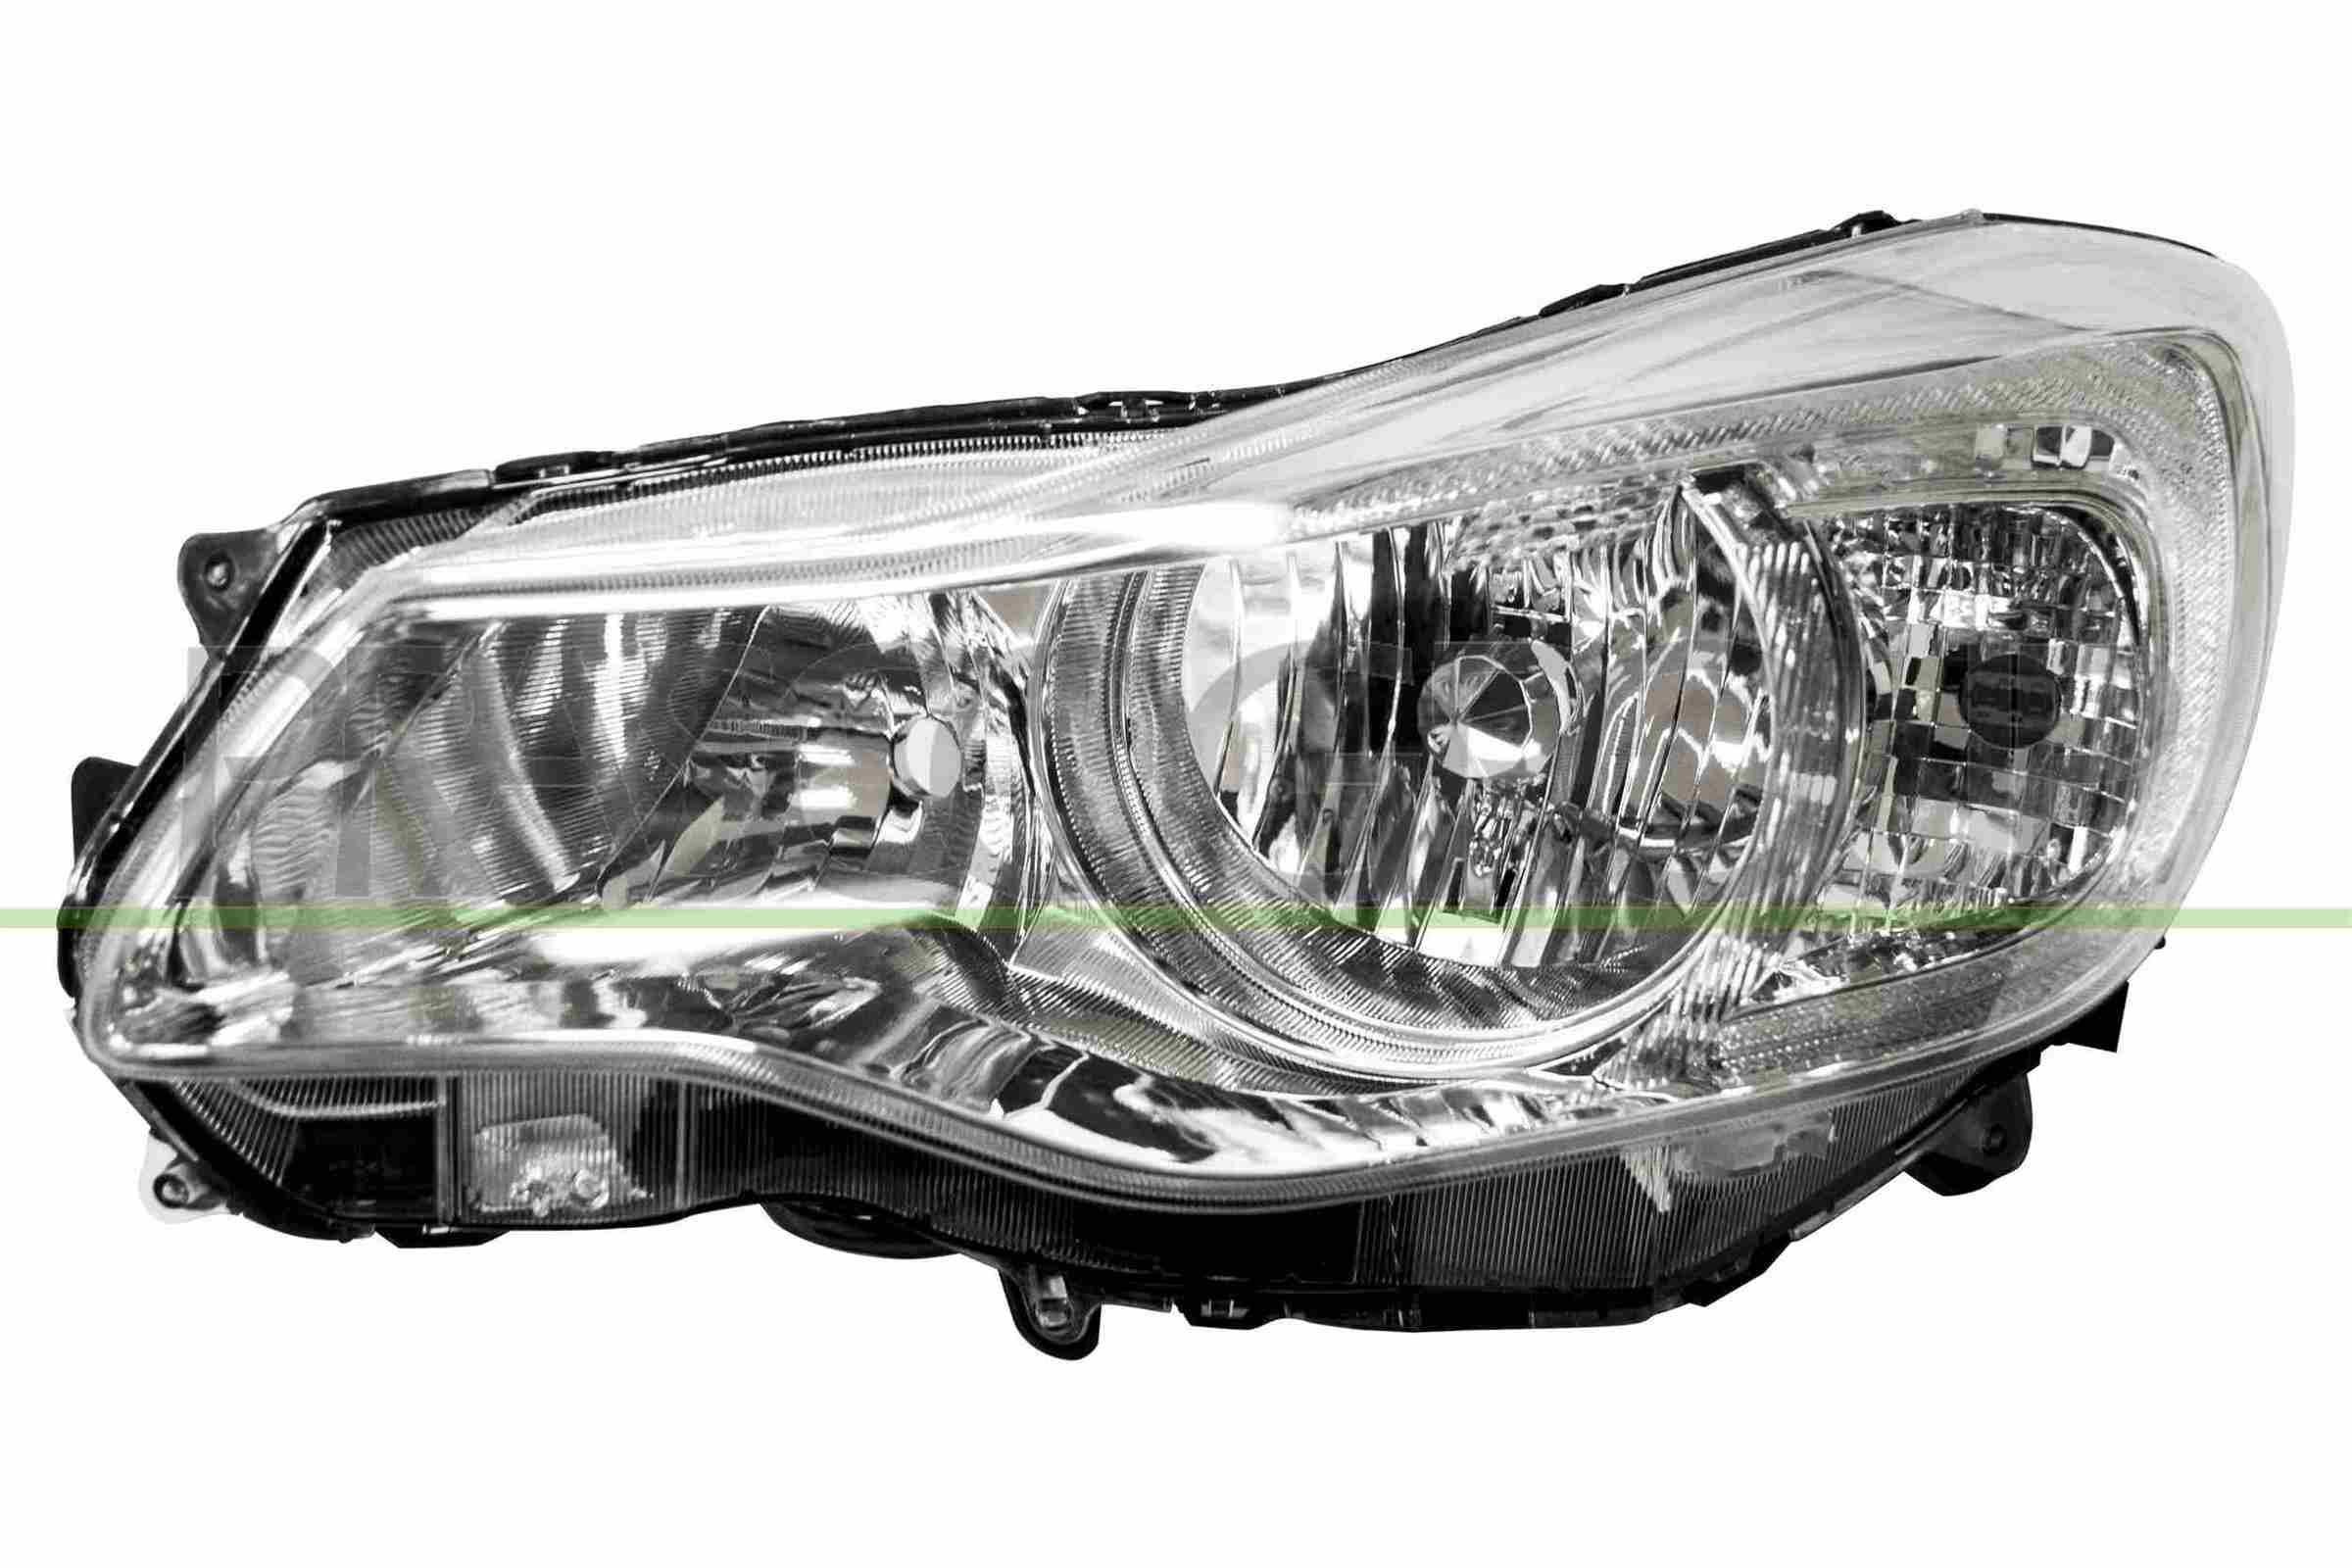 Hauptscheinwerfer Frontscheinwerfer links LED HB3 Motor für Subaru Forester